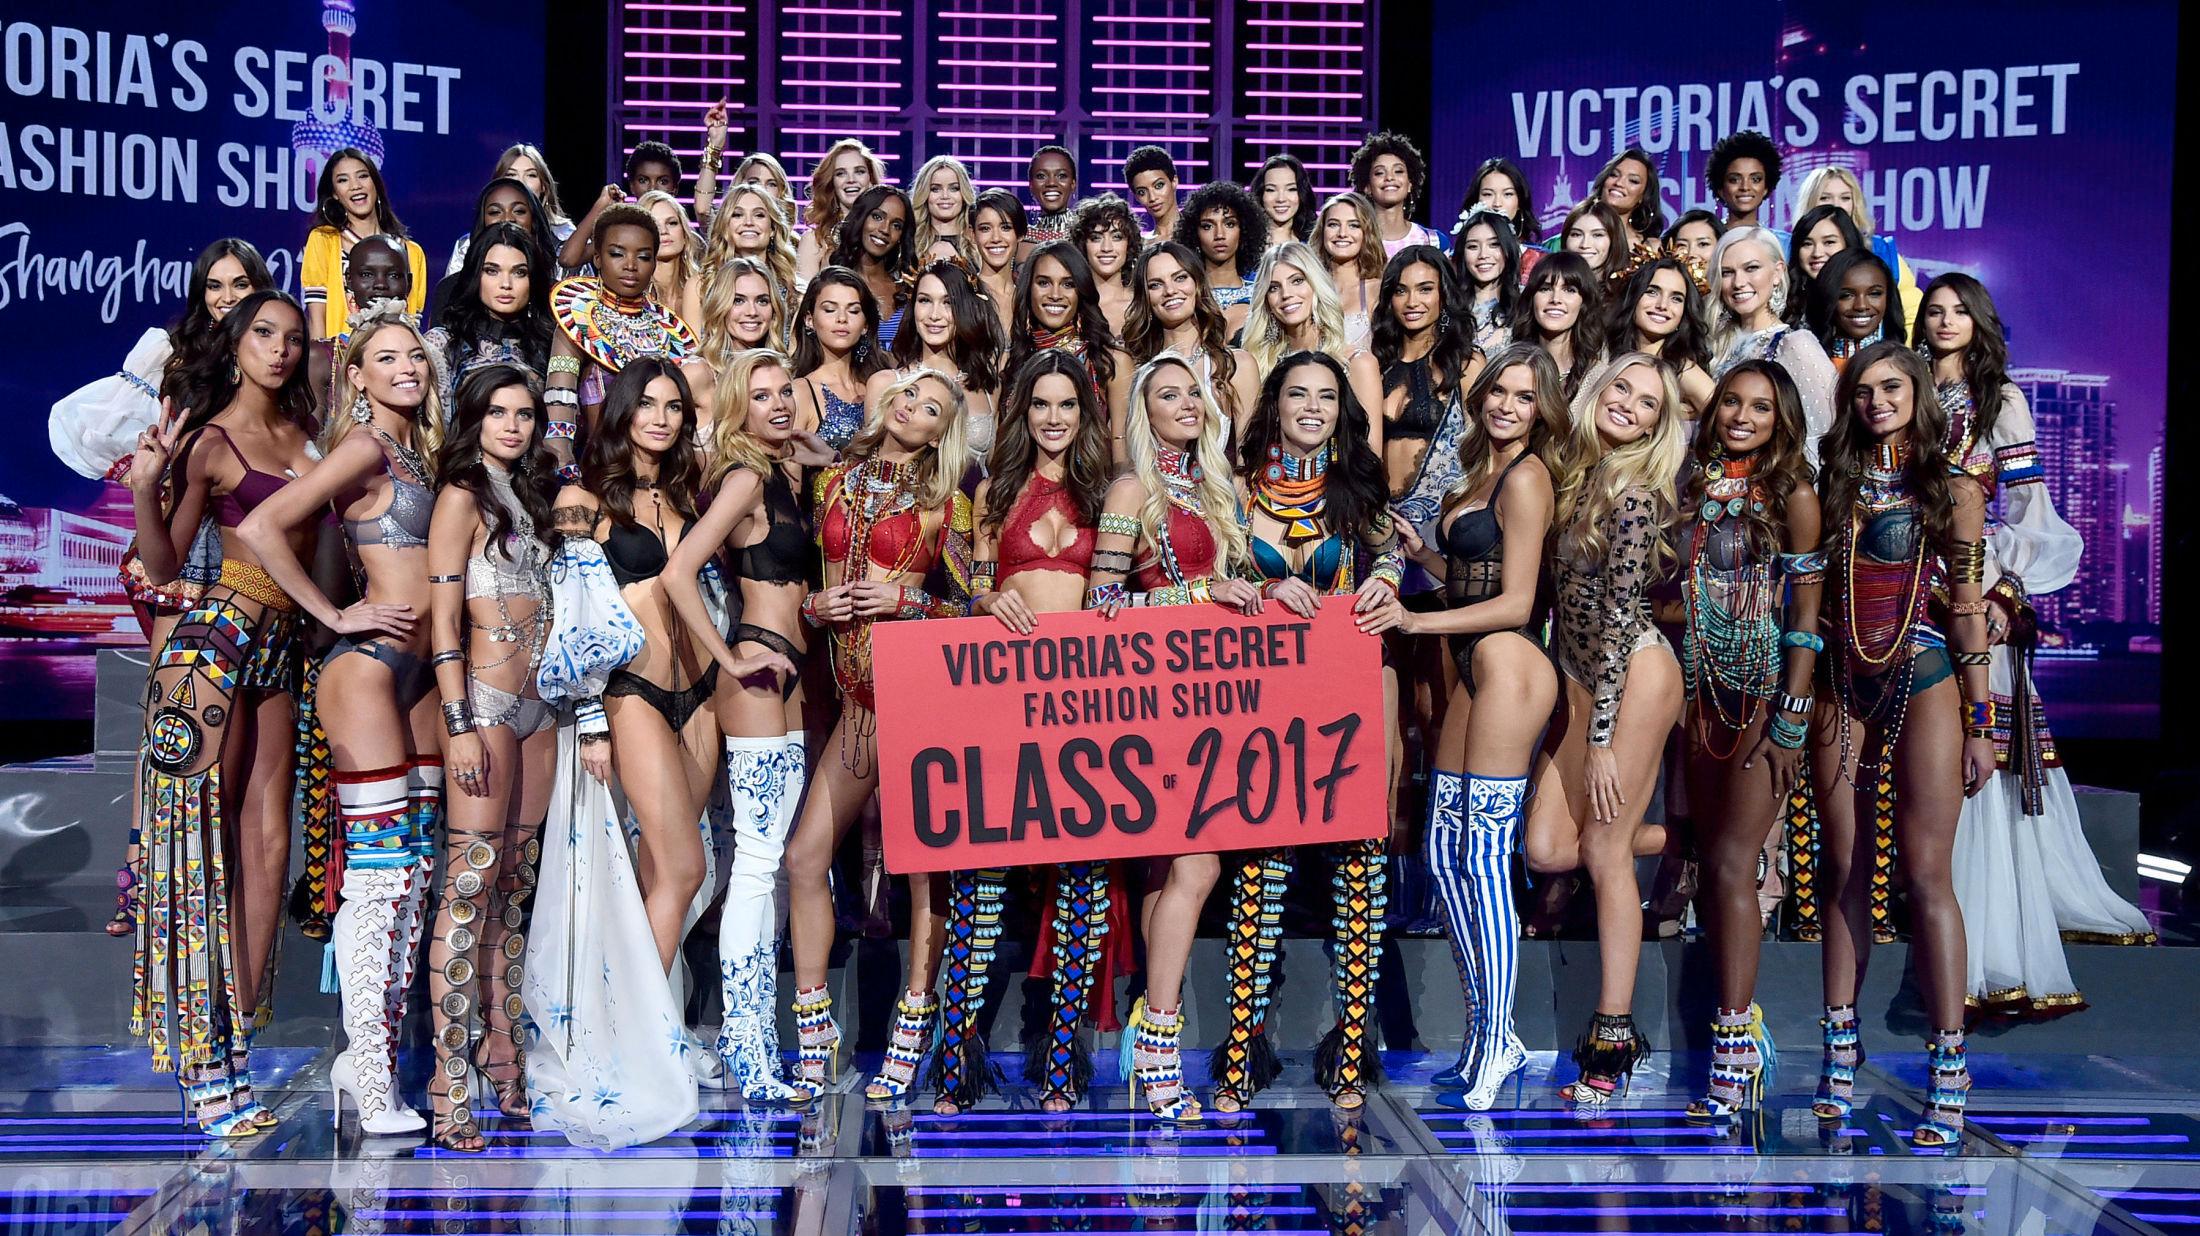 STØRSTE NOENSINNE: Hele 55 modeller gikk i Victoria's Secret Fashion Show i Shanghai. Foto: Getty Images.